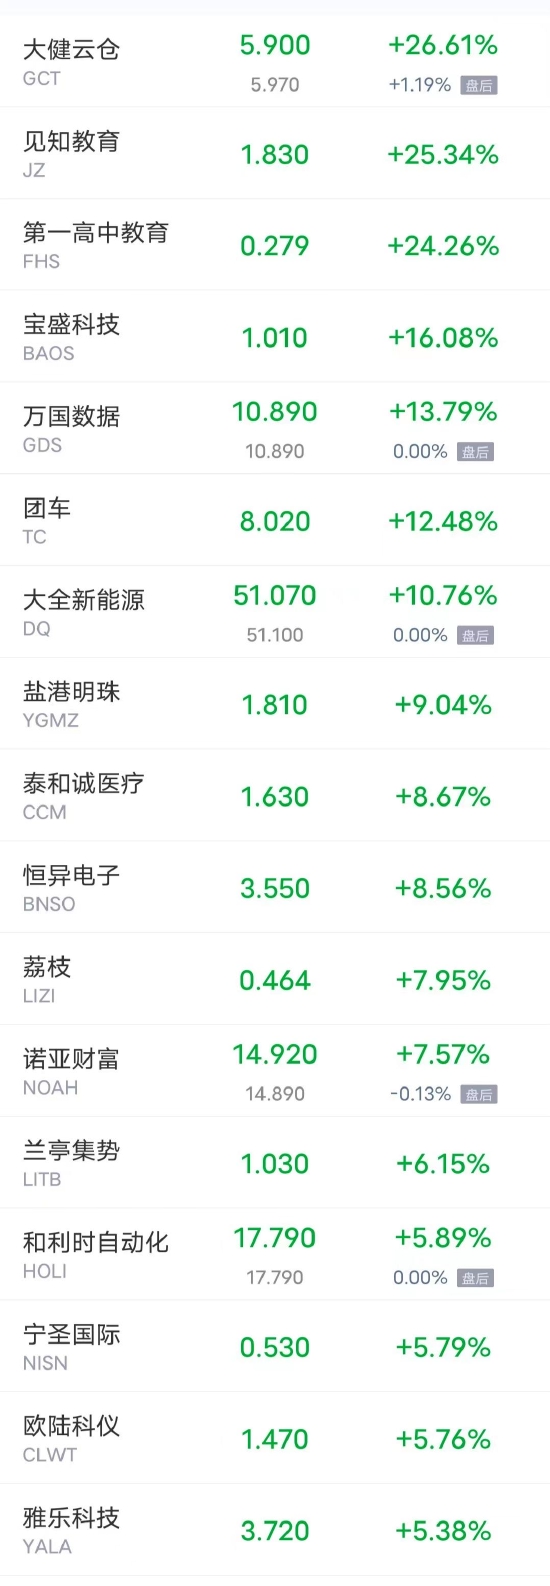 周一热门中概股涨跌不一 中国铝业涨超13% 蔚来跌超6%